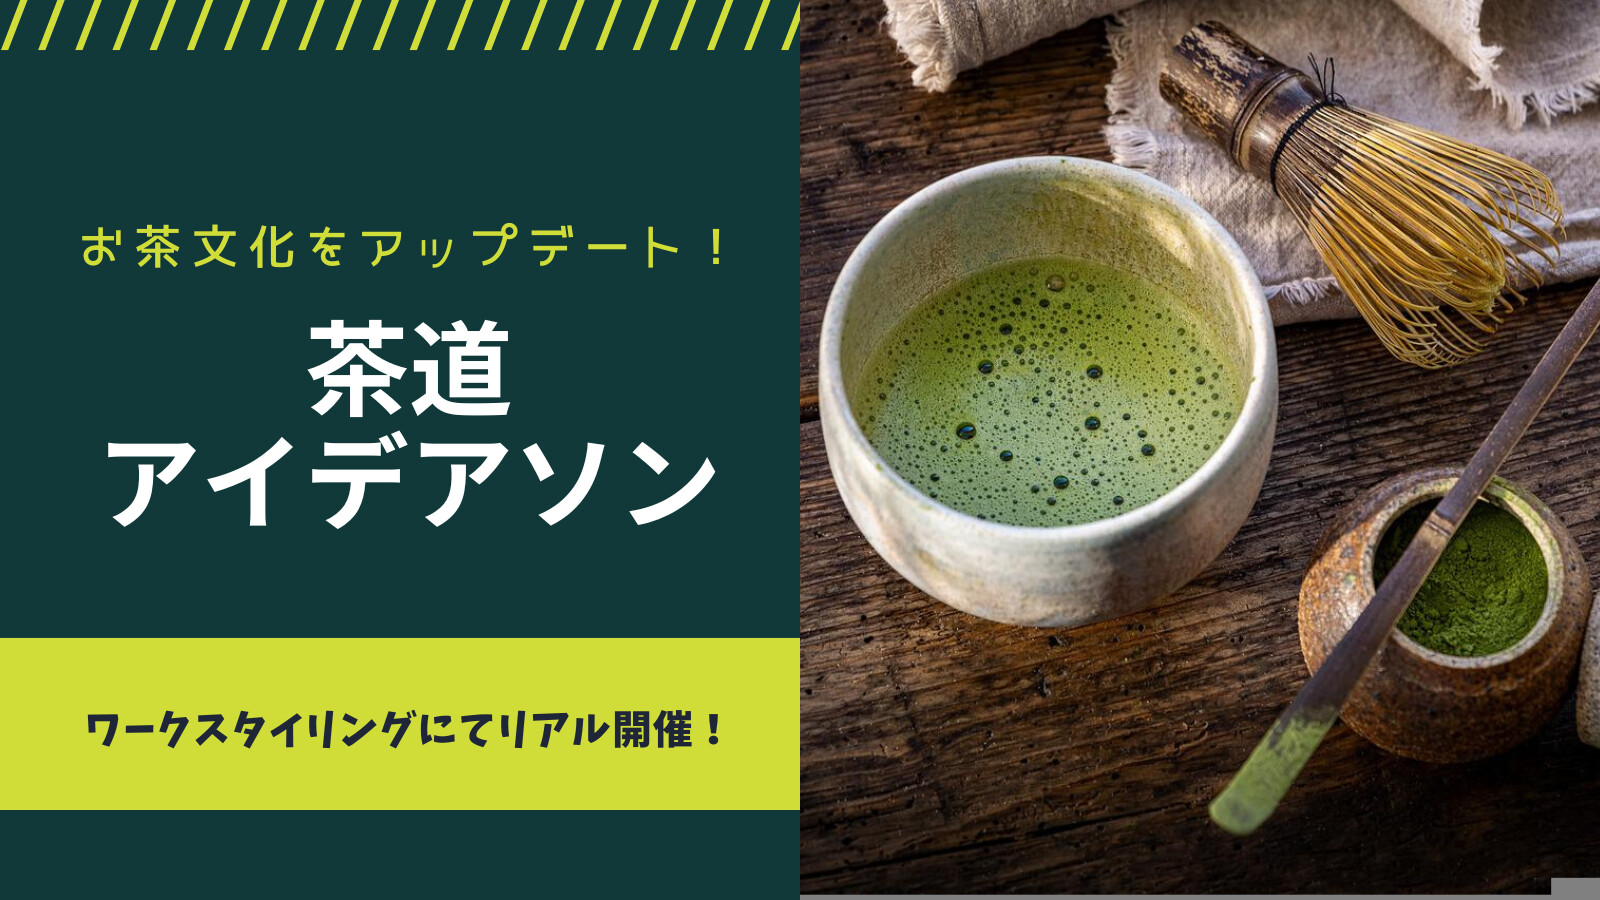 イベント情報：茶道アイデアソン～茶道文化を現代にアップデートしよう～@八重洲